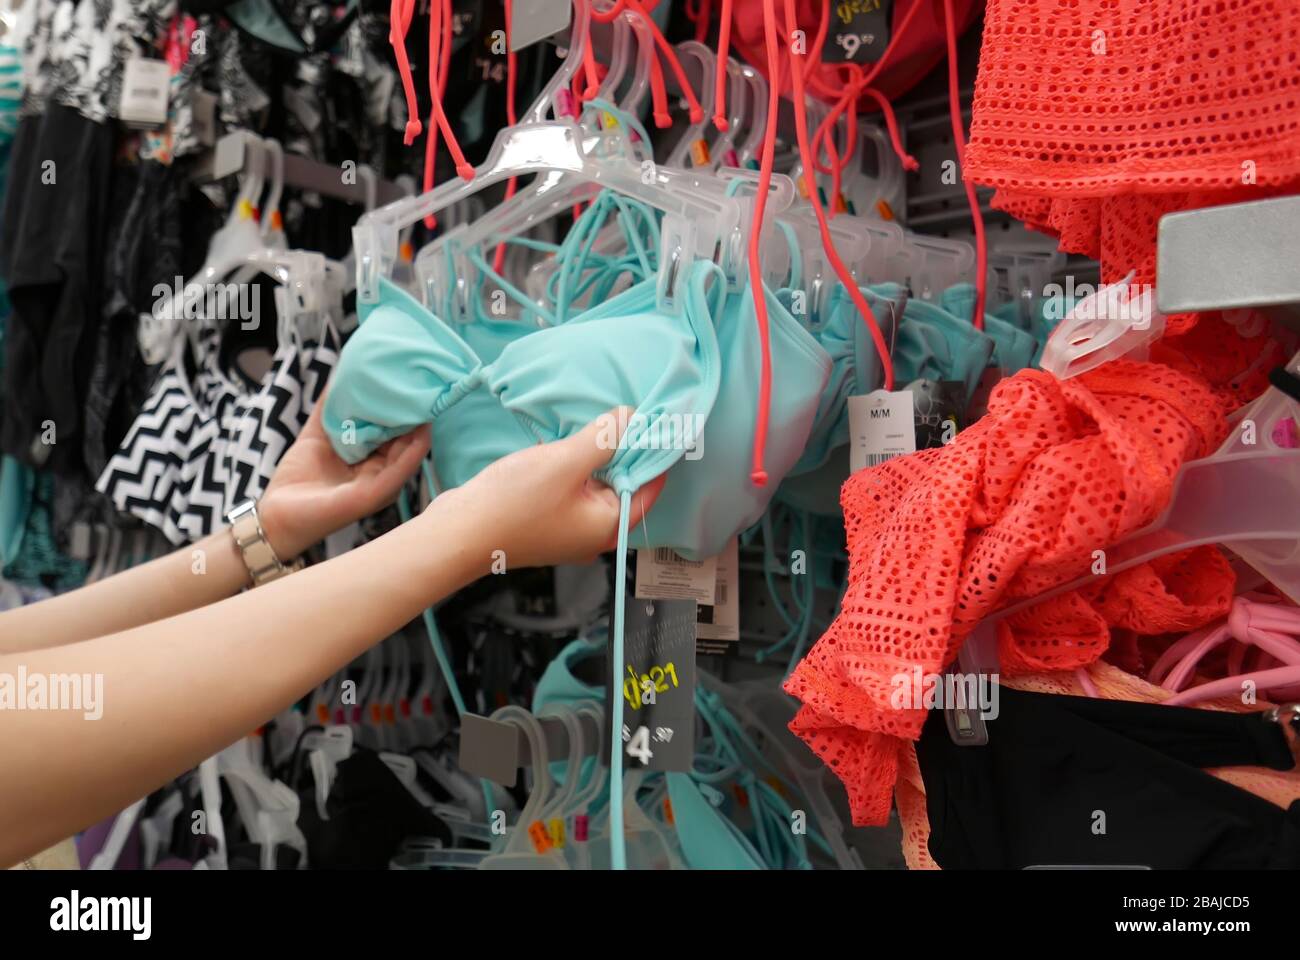 Donna che acquista costume da bagno all'interno del negozio Walmart Foto Stock